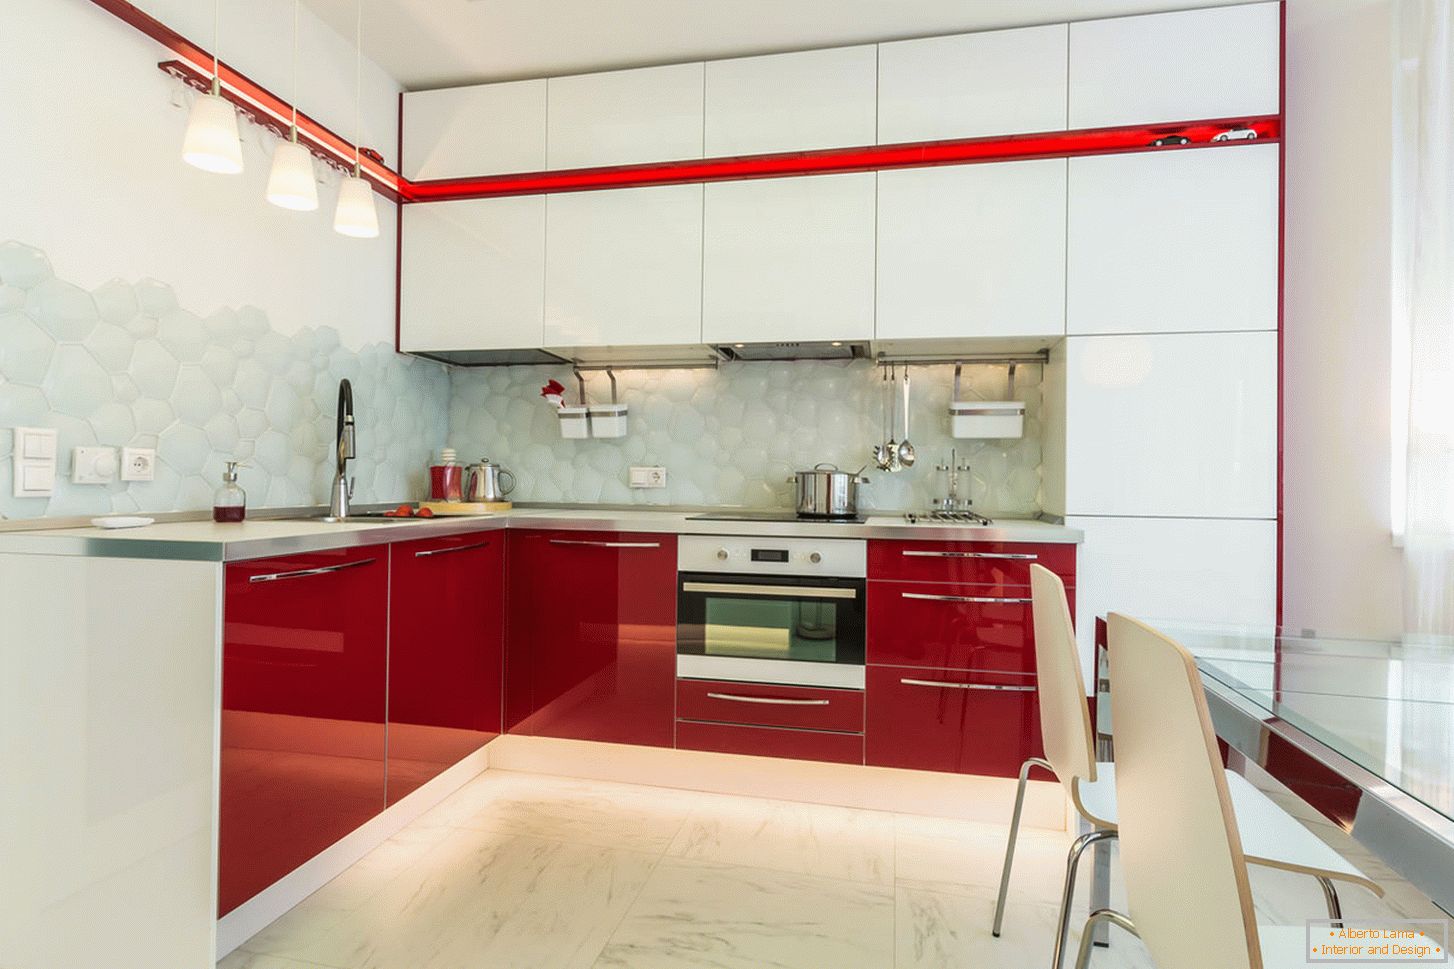 Chic notranja kuhinja v beli in rdeči barvi